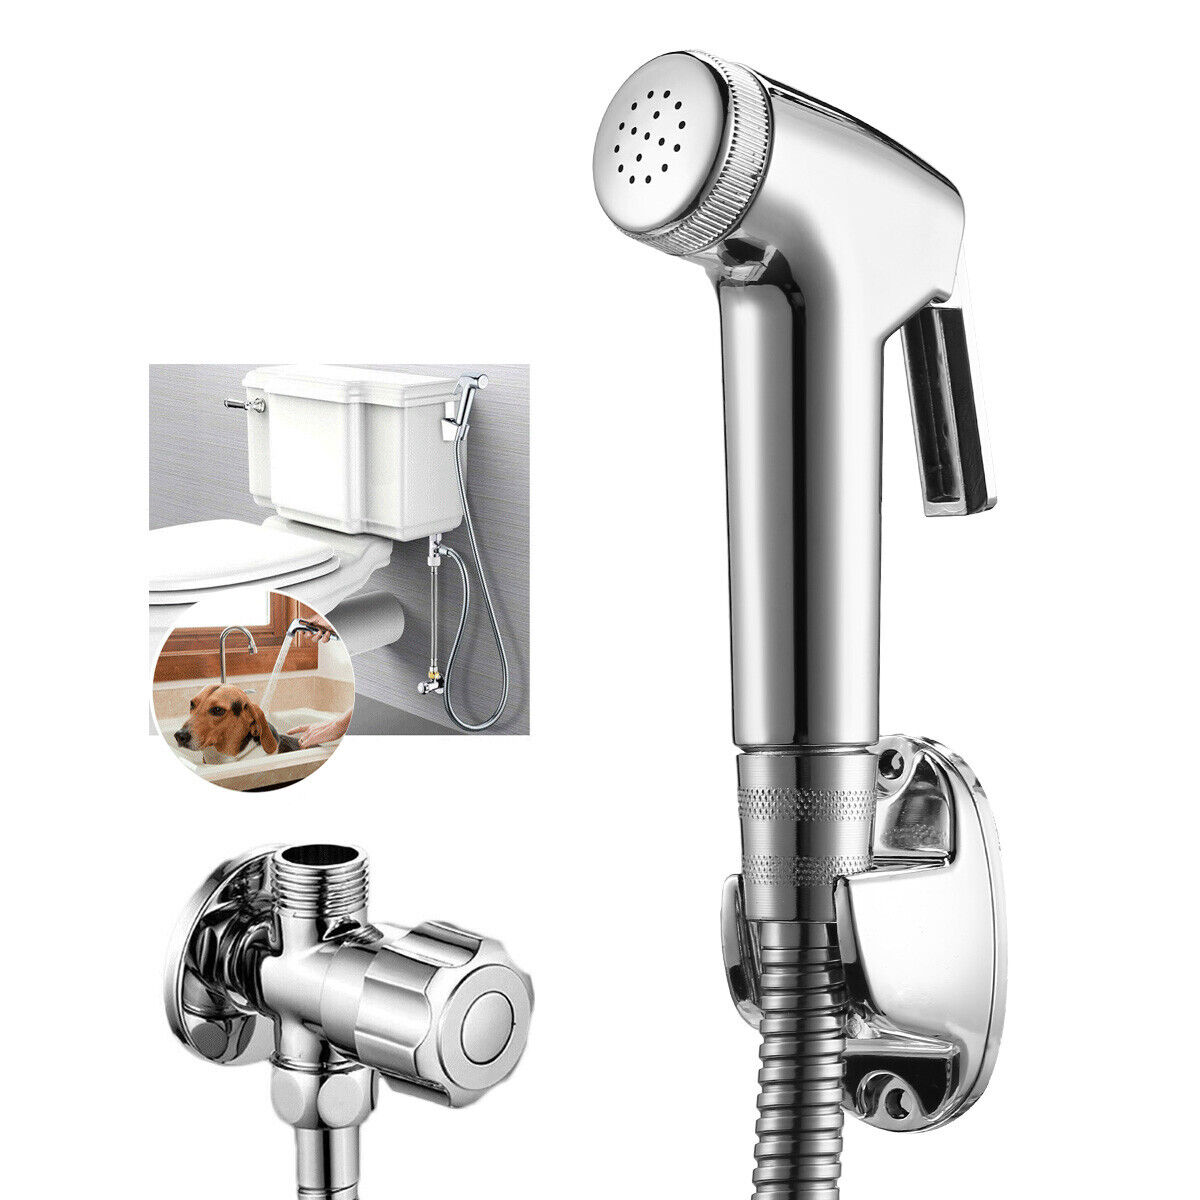 Handheld Bidet Toilet Sprayer Kit Bathroom Shower Water Spray Head with Hose Unbranded Toilet Bidet Shower - фотография #3